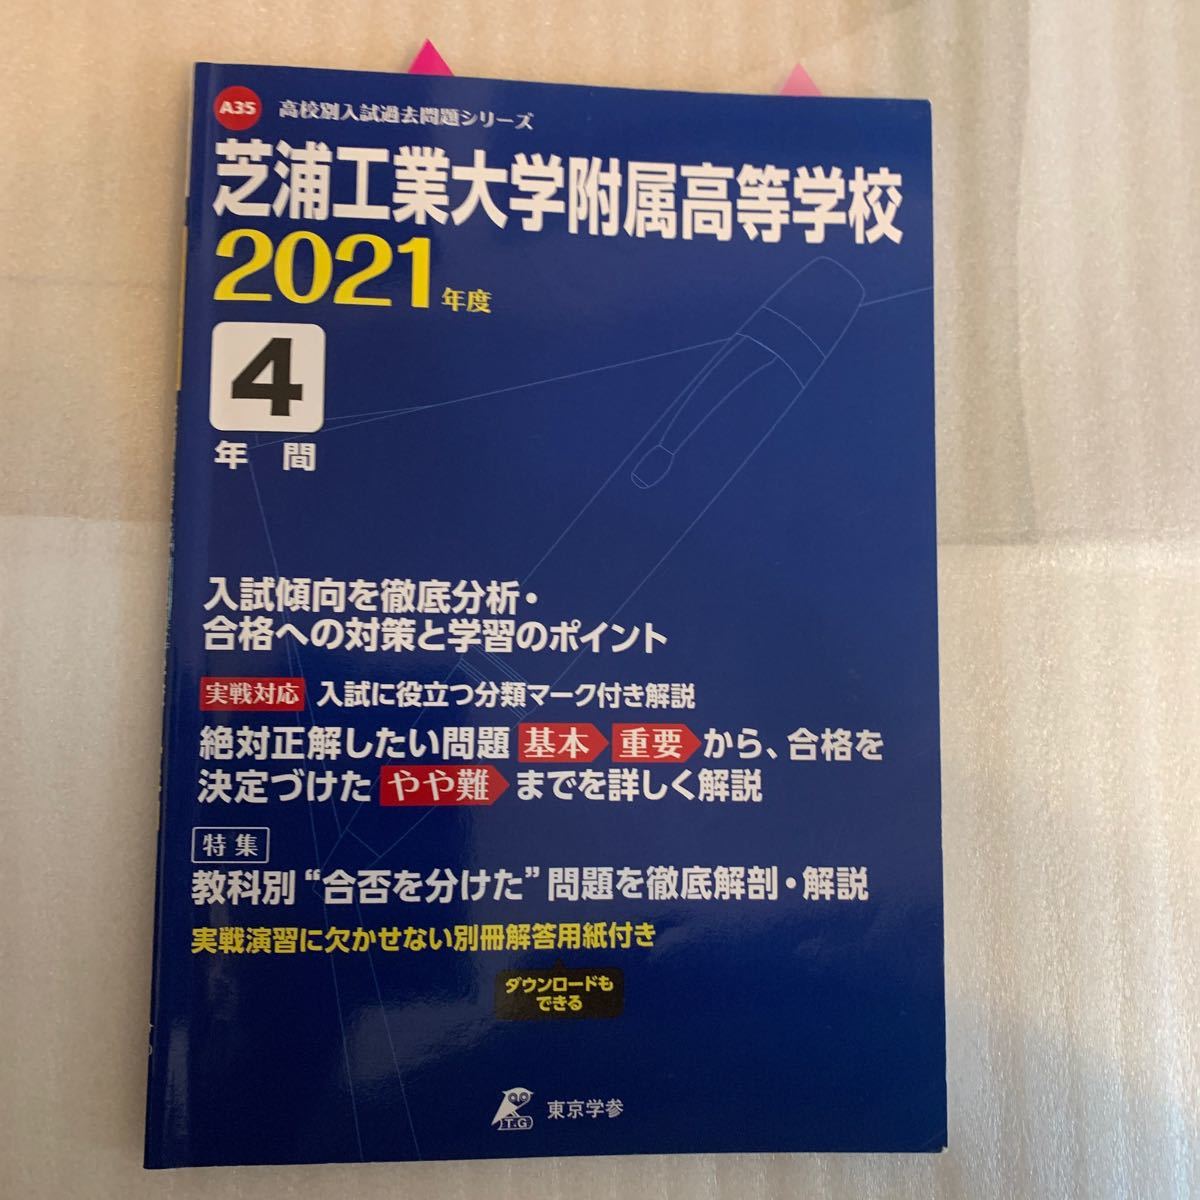  東京学参 芝浦工業大学附属高等学校 4年間入試傾向 2021年度